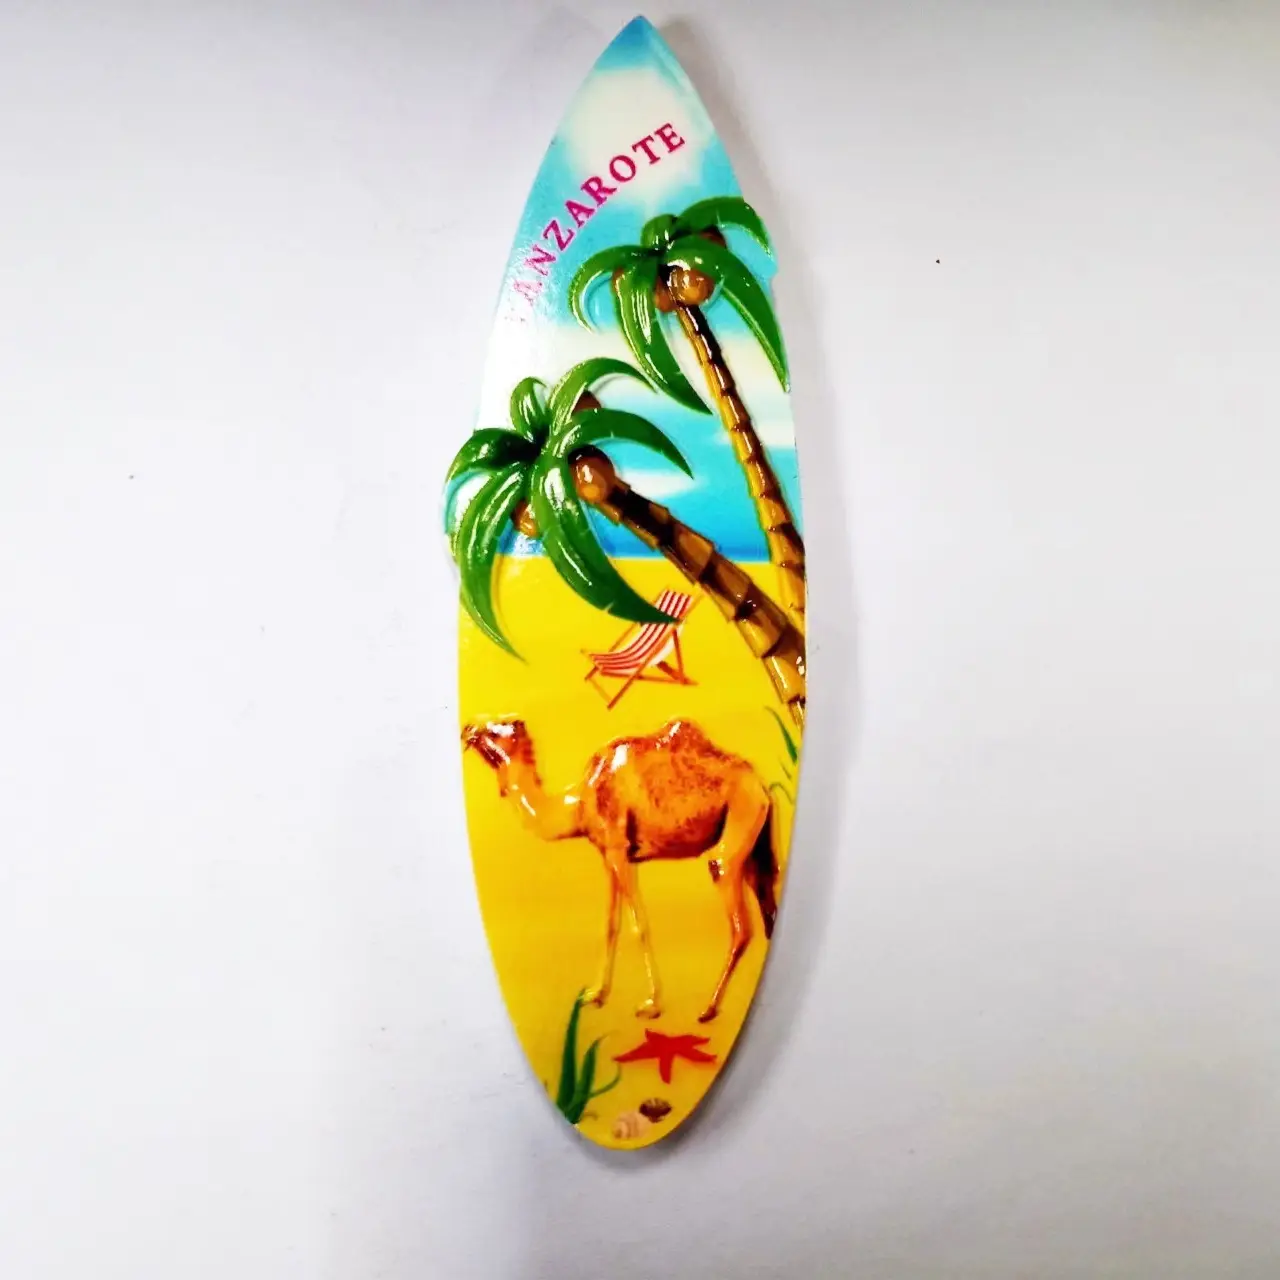 Adhesivo de resina para nevera, estilo de tabla de surf a la moda, decoración de recuerdo turístico, pegatina para nevera